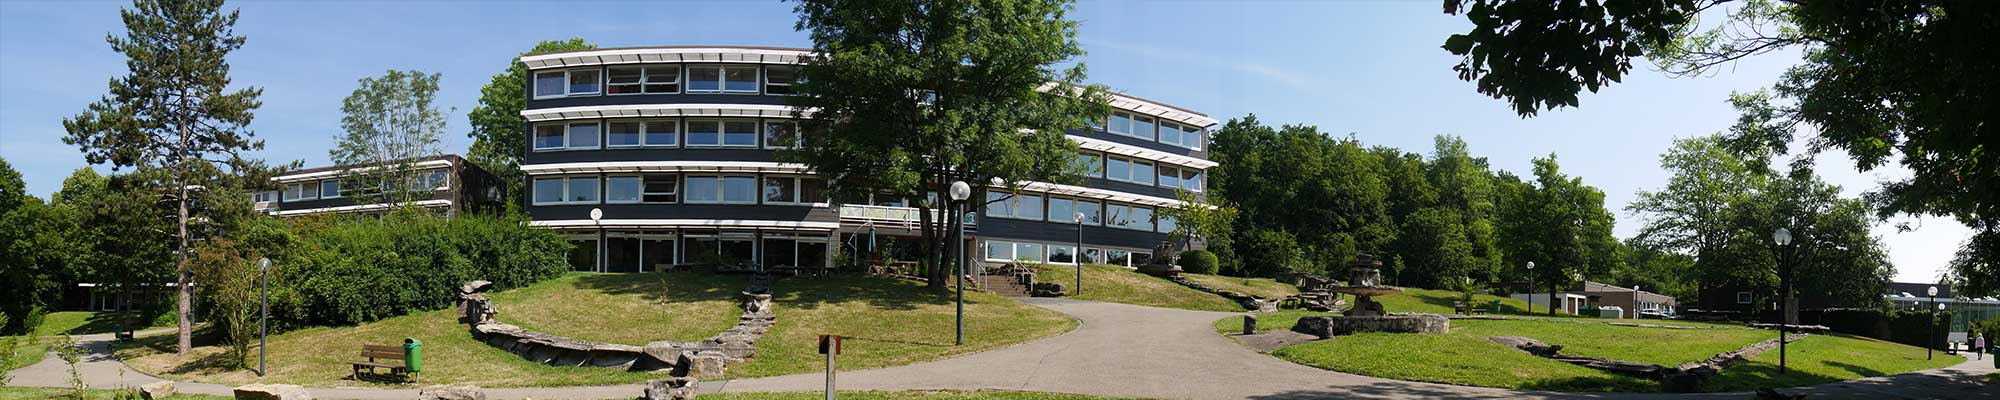 Aufnahme - Eckenberg-Gymnasium Adelsheim